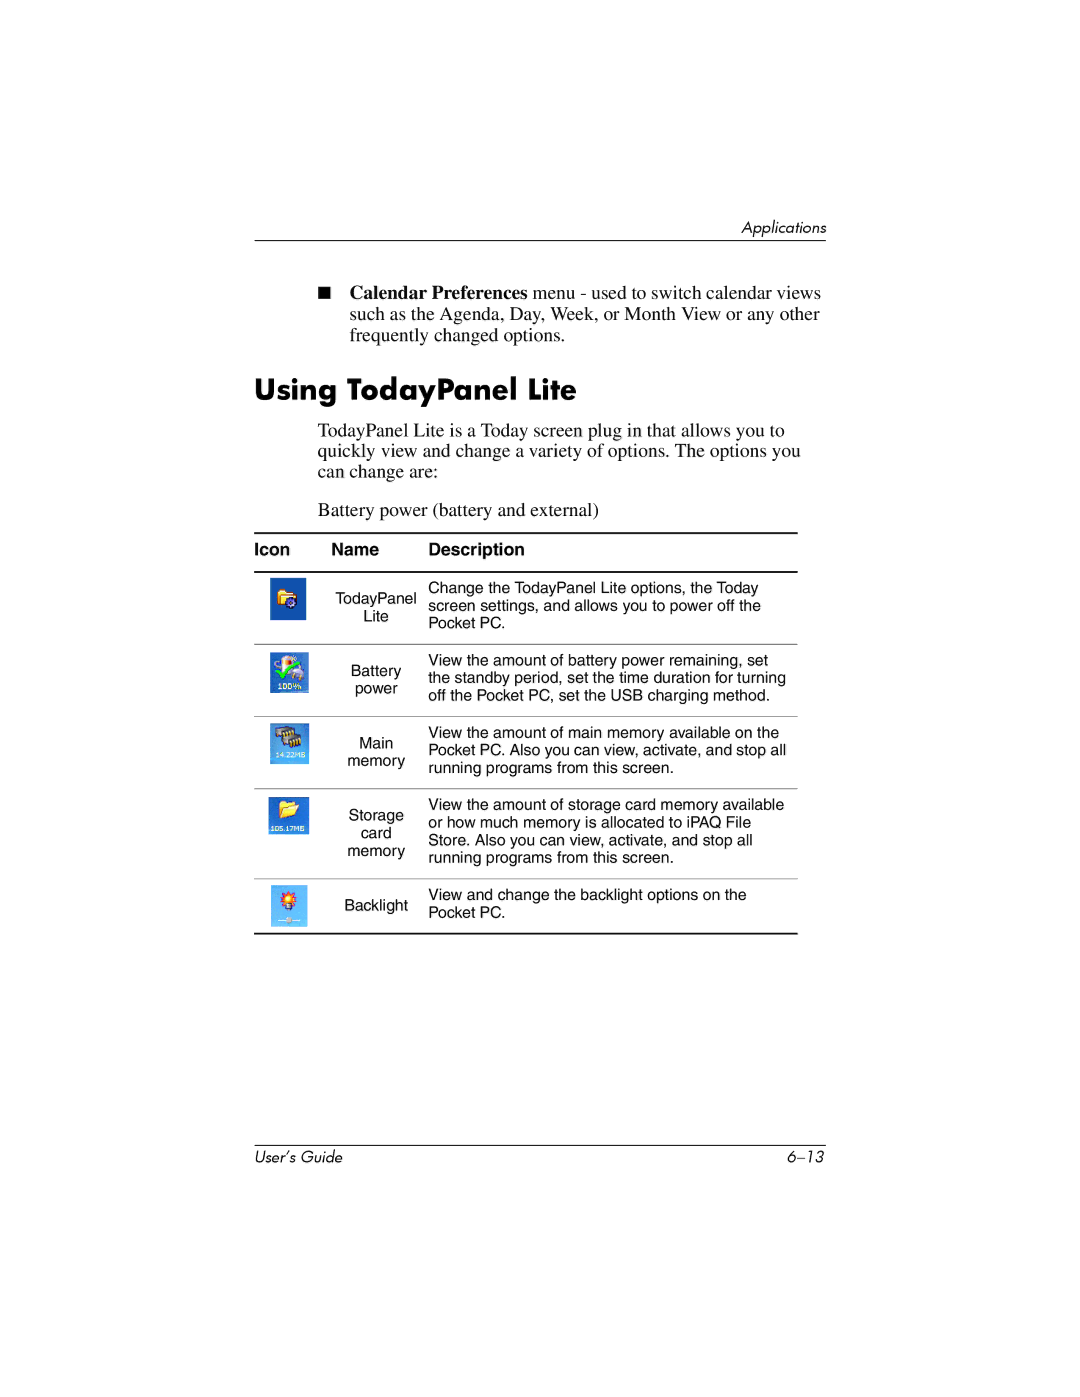 HP hx4700 manual Using TodayPanel Lite, Icon Name Description 